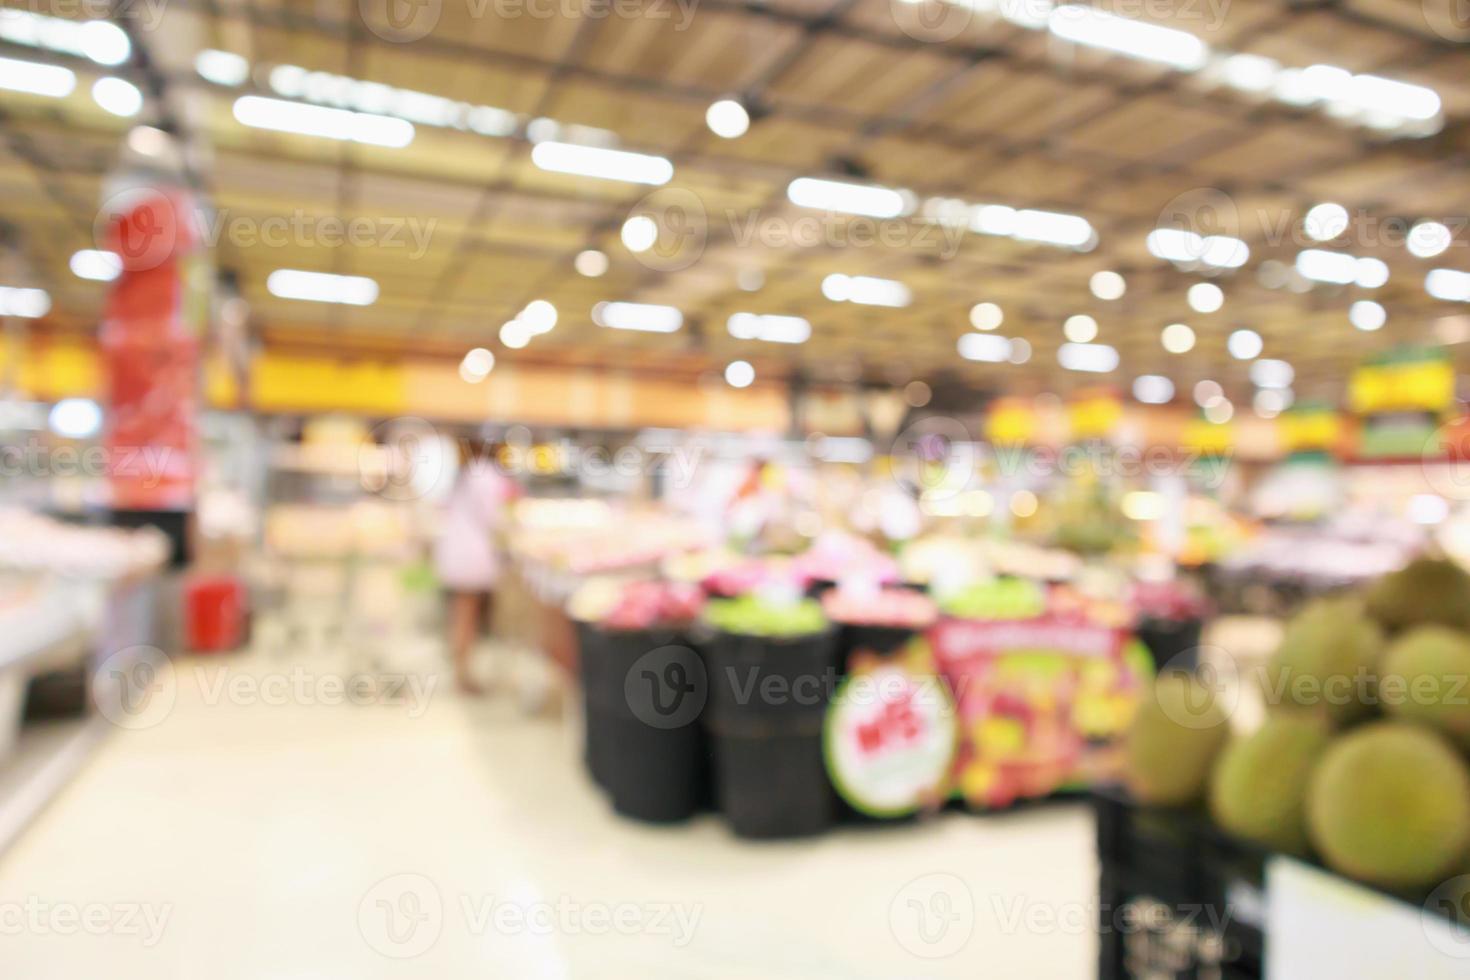 supermercado com frutas durian nas prateleiras fundo desfocado com bokeh foto